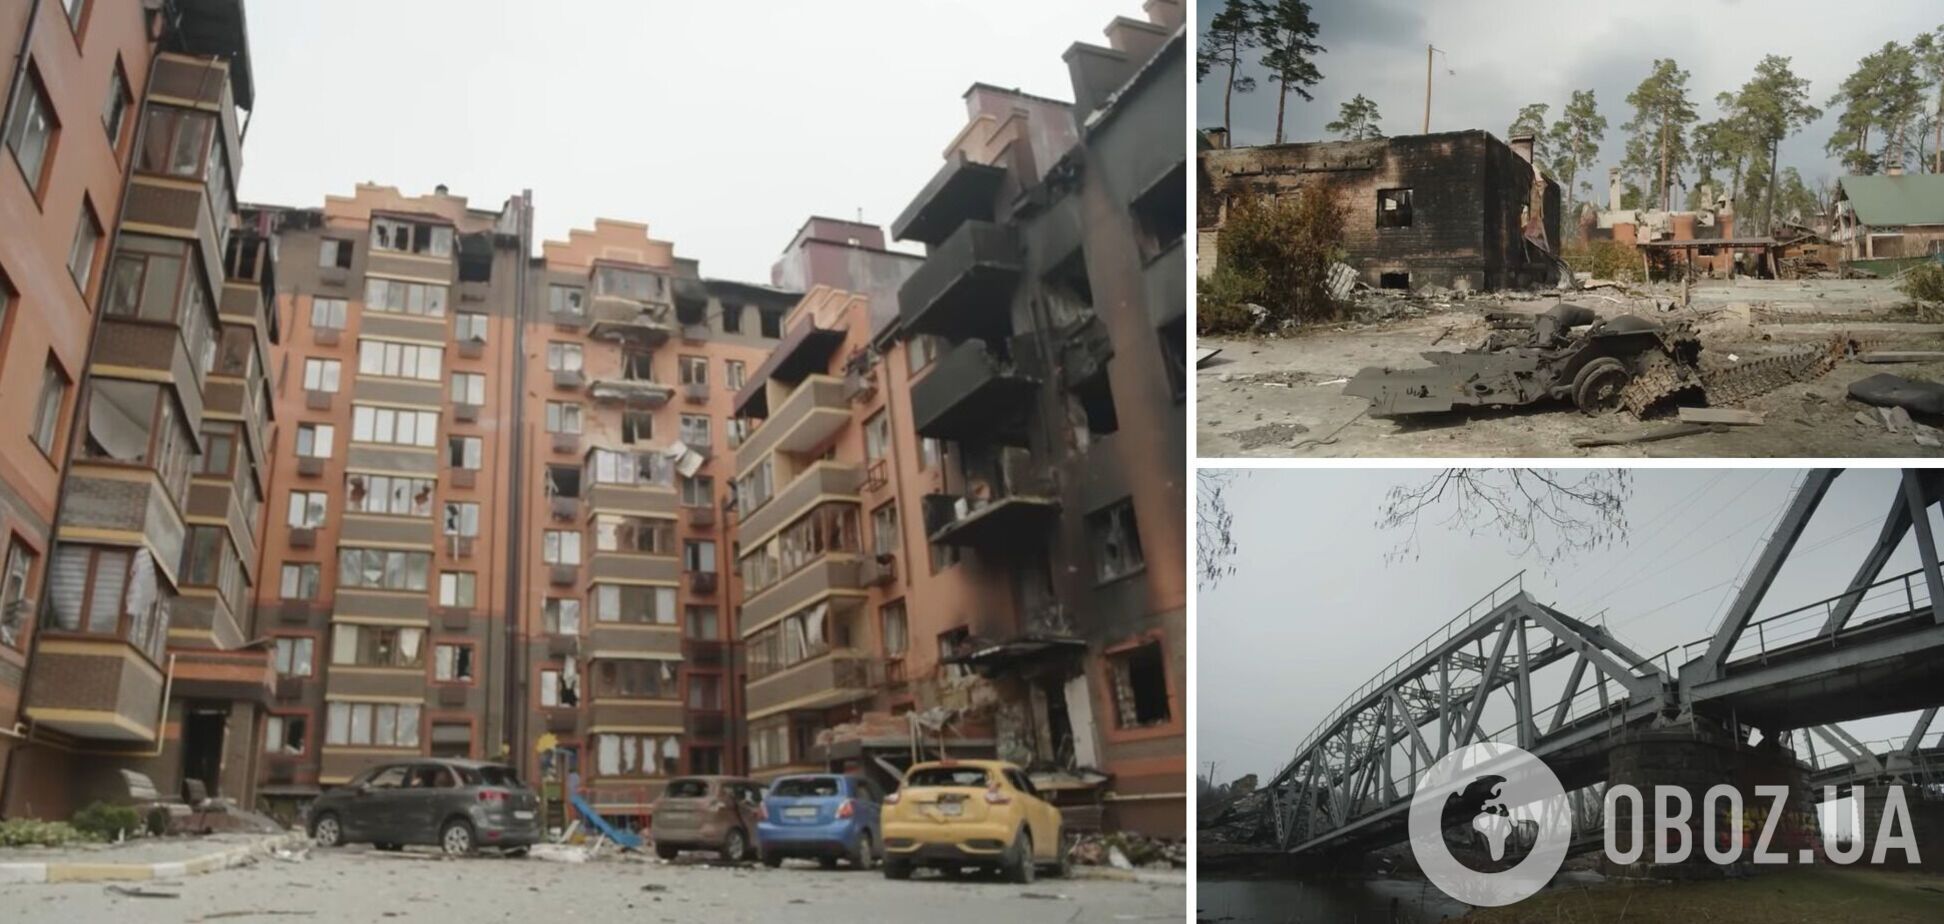 Розгромлені будинки й тіла вбитих на вулиці: масштаб руйнувань в Ірпені показали на відео